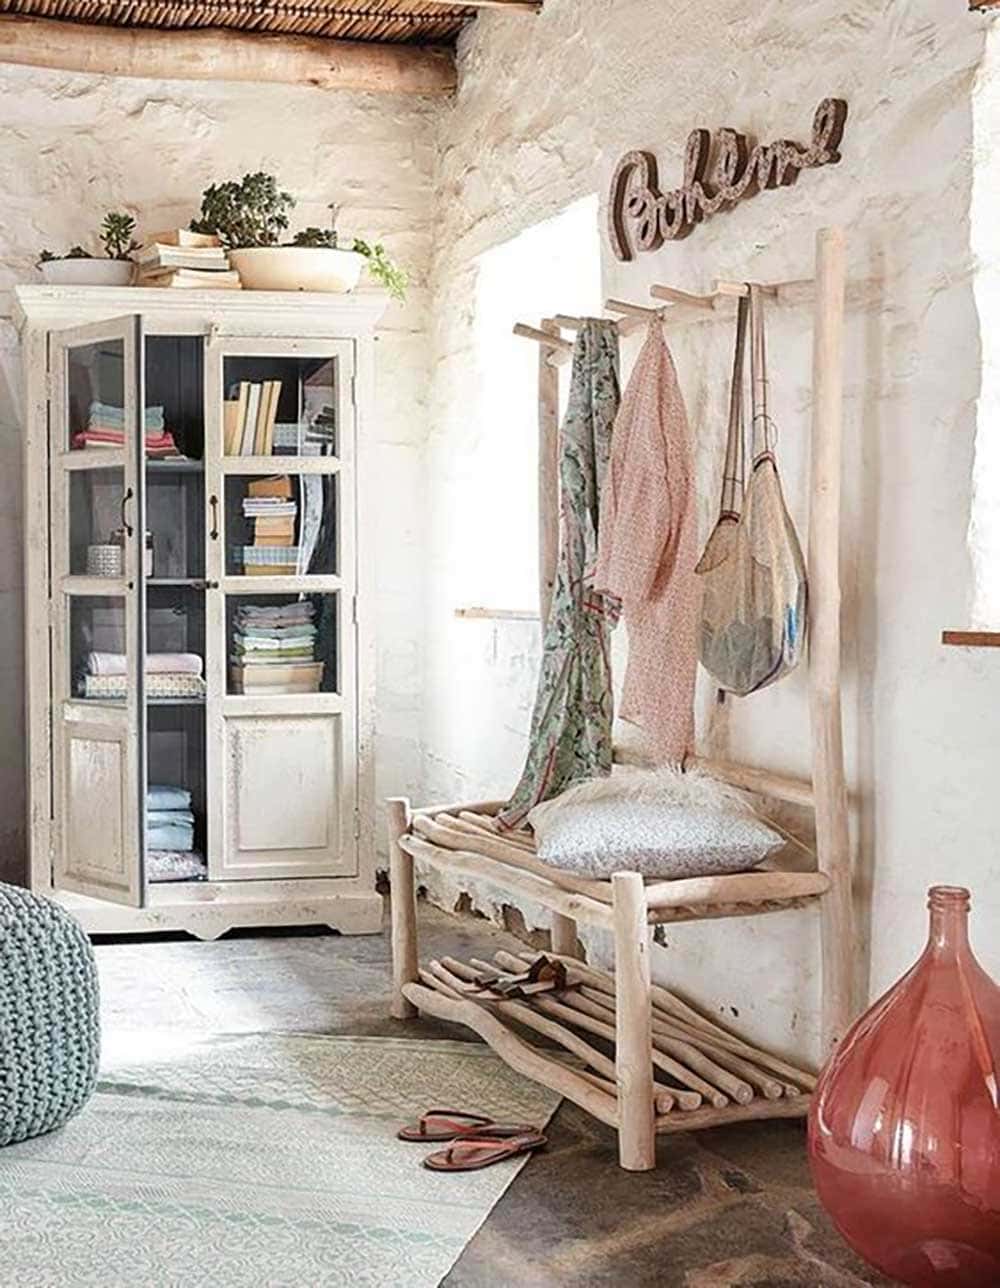 Idée de décoration avec une jarre en verre rose dans une chambre style bord de mer - Decorazine.fr